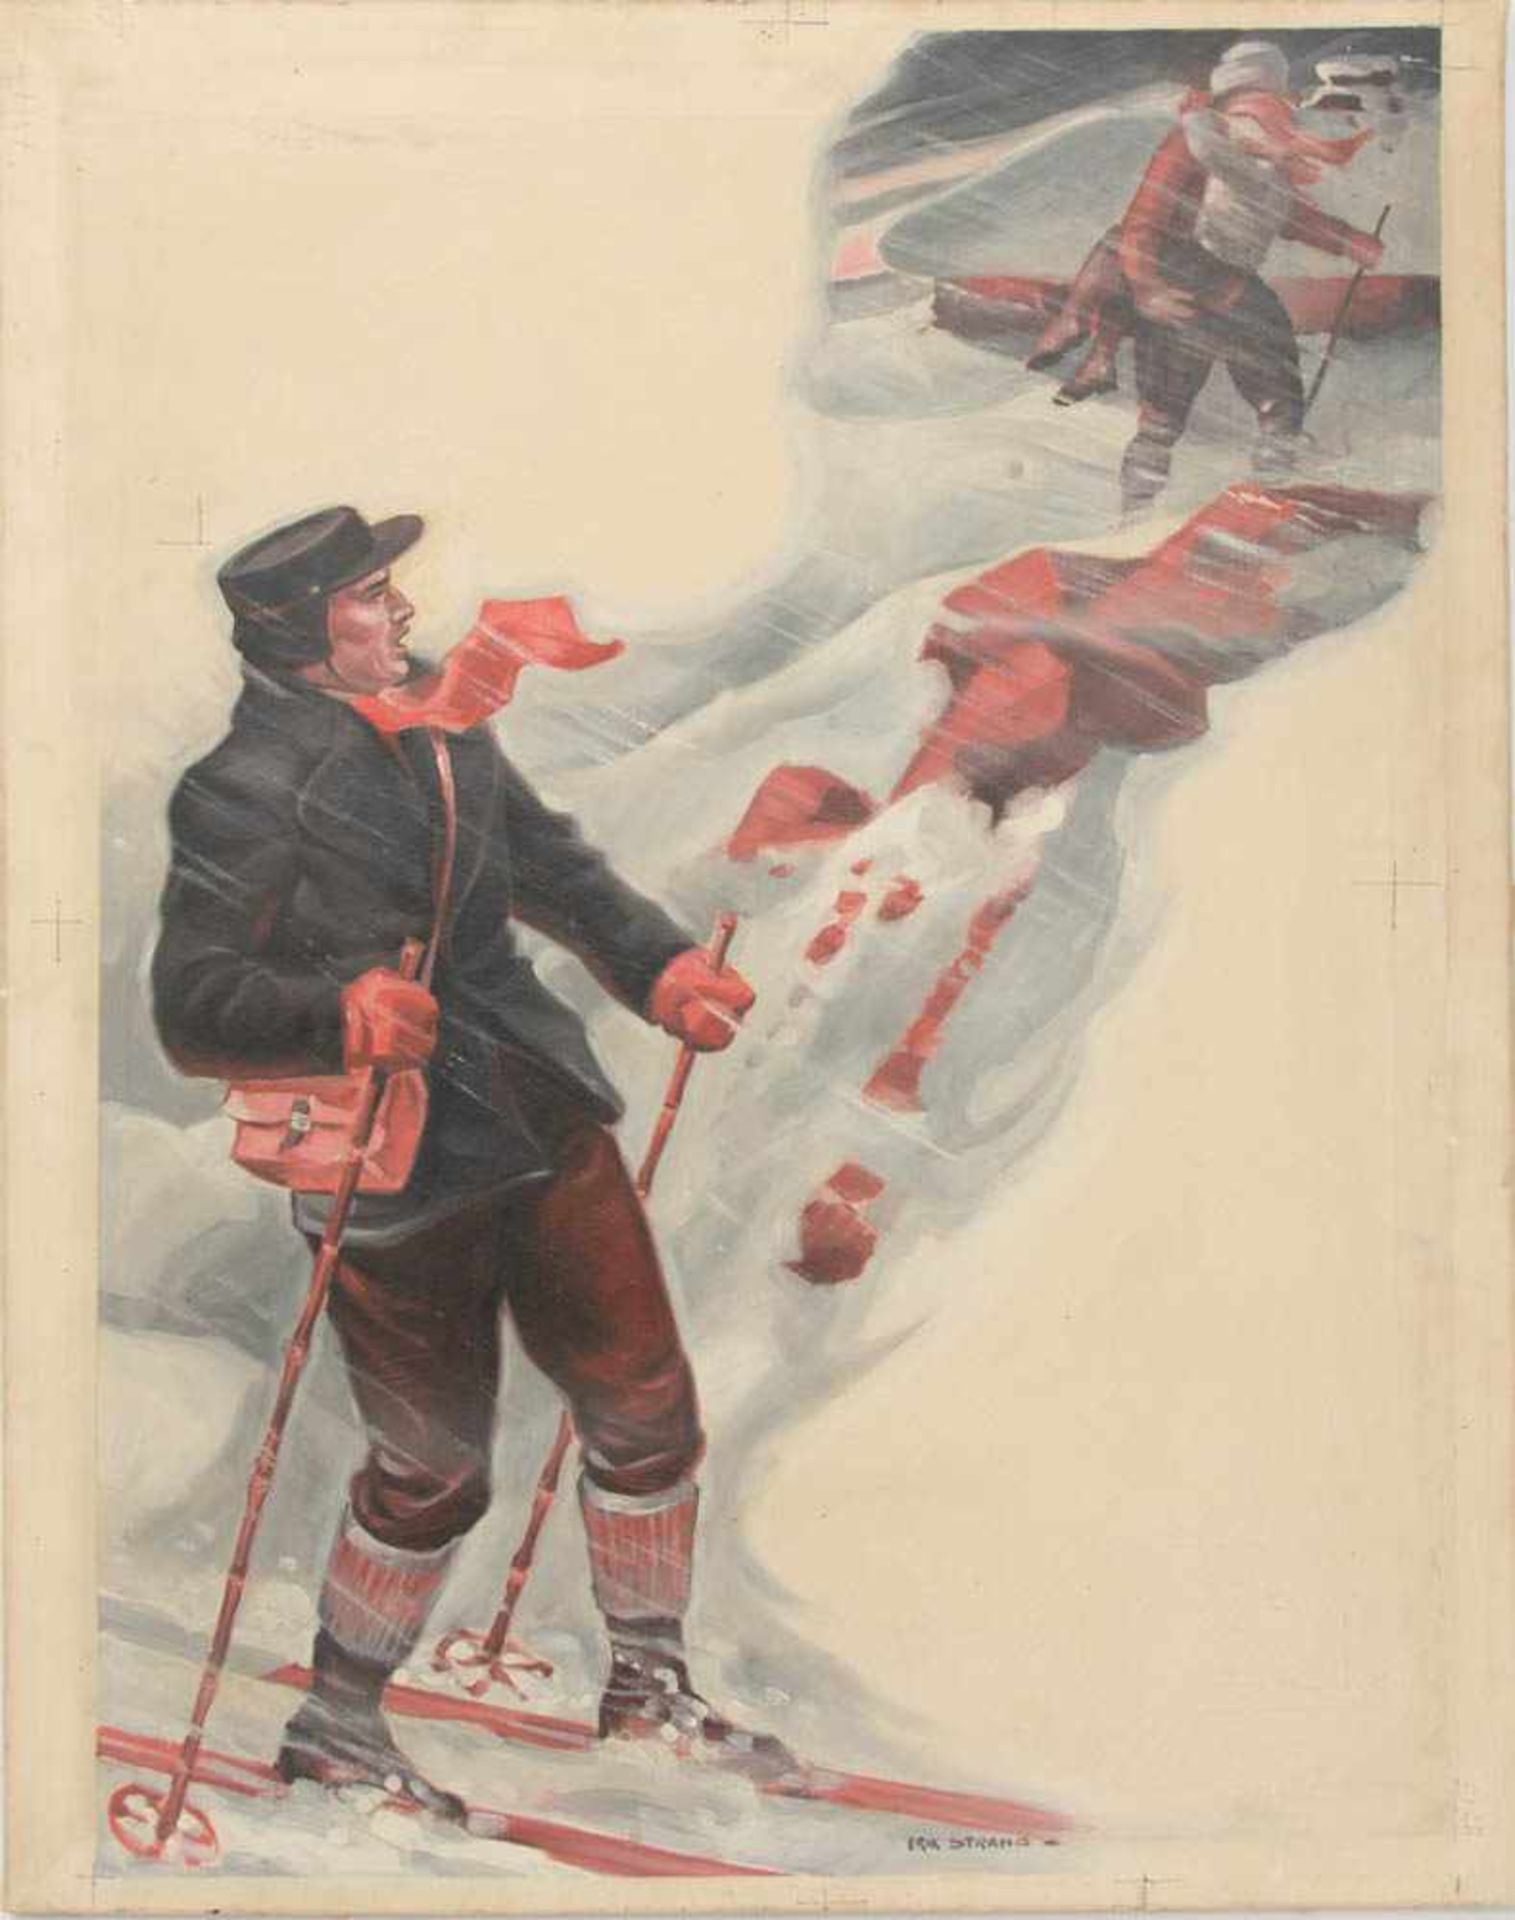 ERIK STRANG, Alpine Szene, Acry/Leinwand, 20. Jh.Kratzer auf der Bildmitte, nicht gerahmt.54 x 68